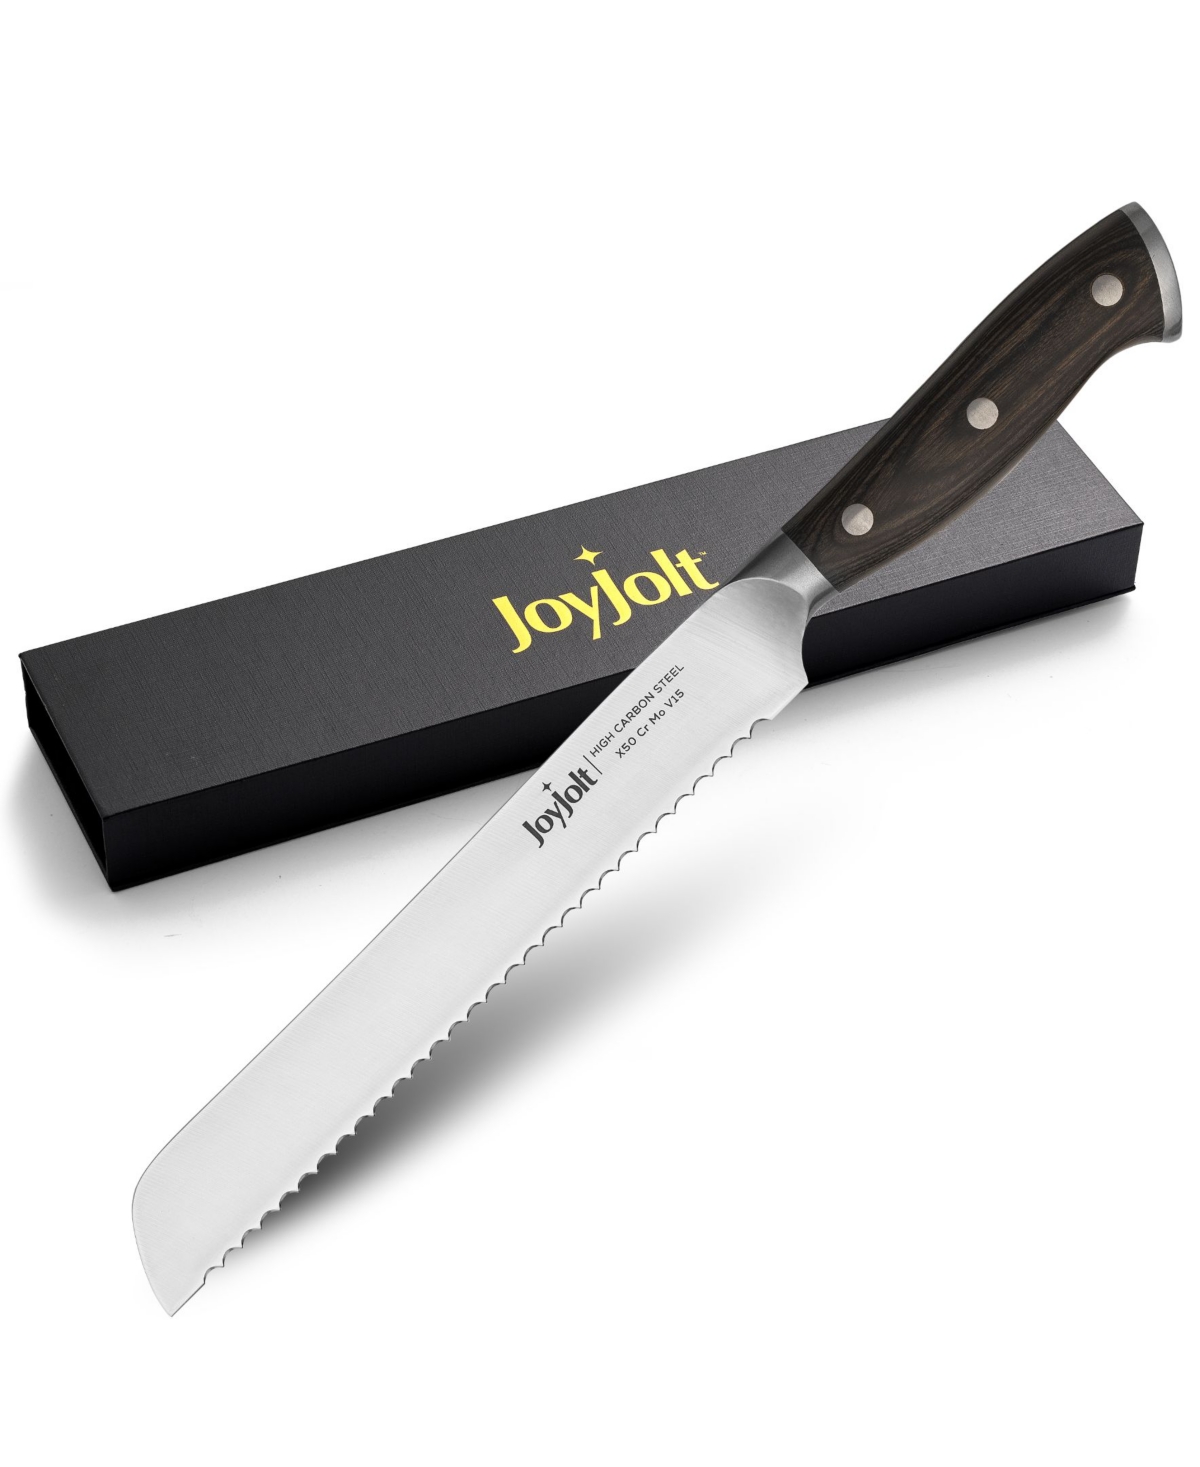 Joyjolt 8"  Bread Knife High Carbon Steel Kitchen Knife In Gray